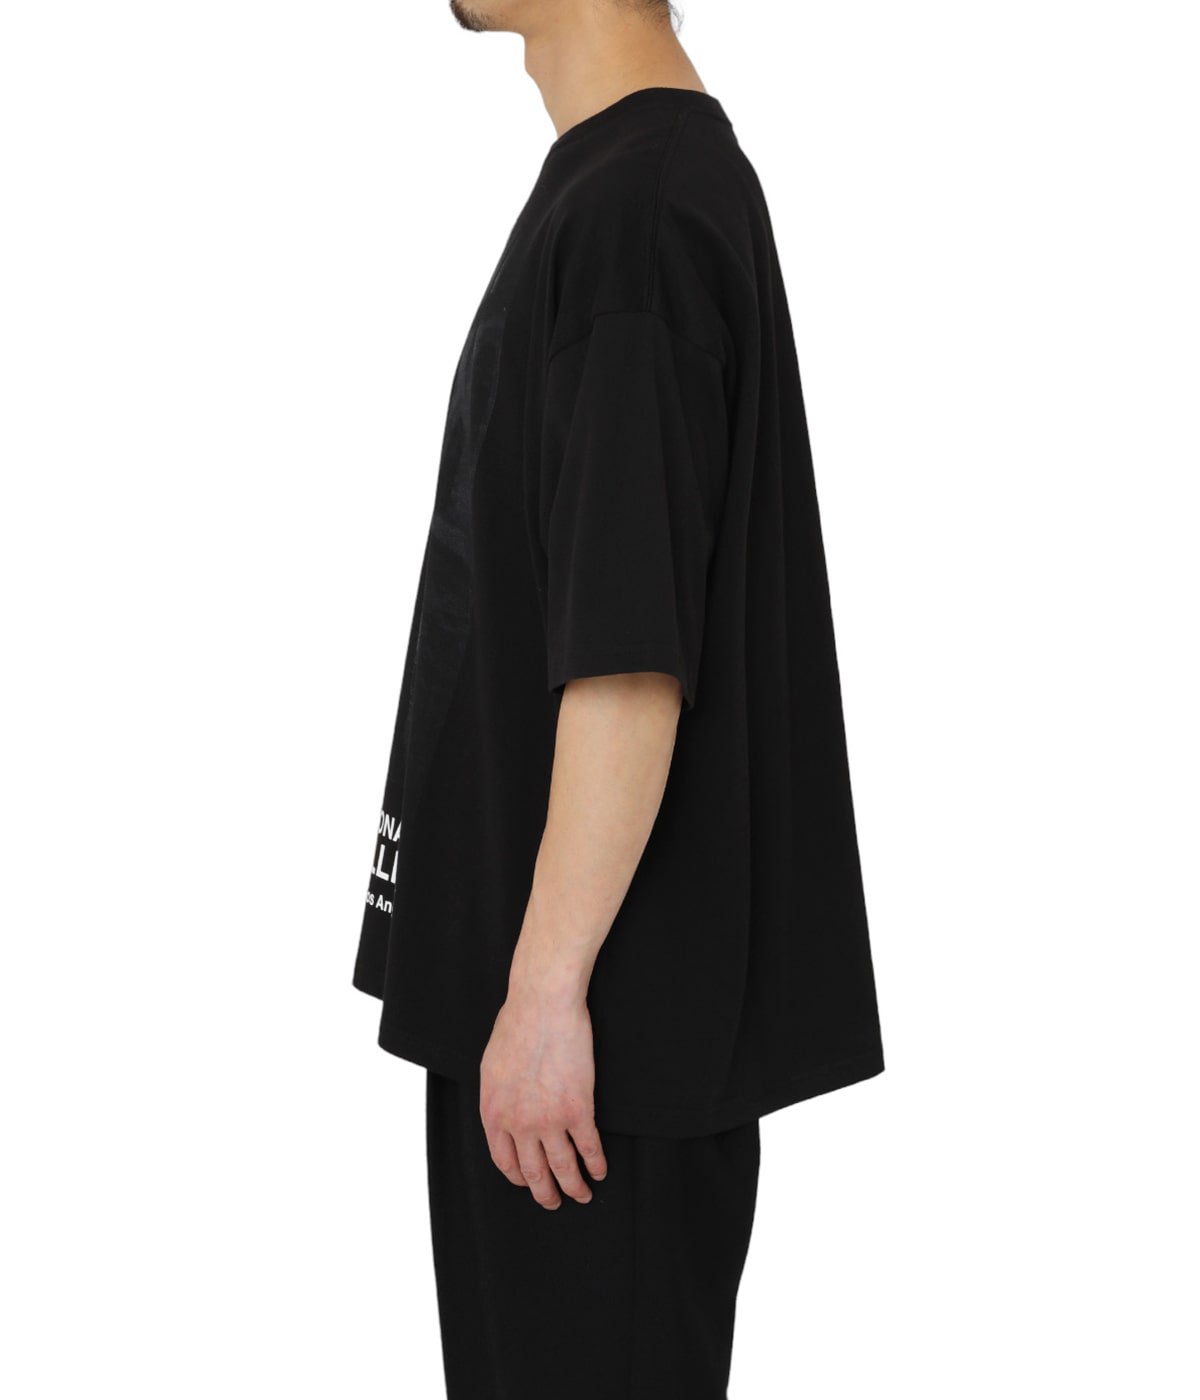 ONLY ARK】 別注 40/2 Short Sleeve Yves Saint Laurent(BY Helmut